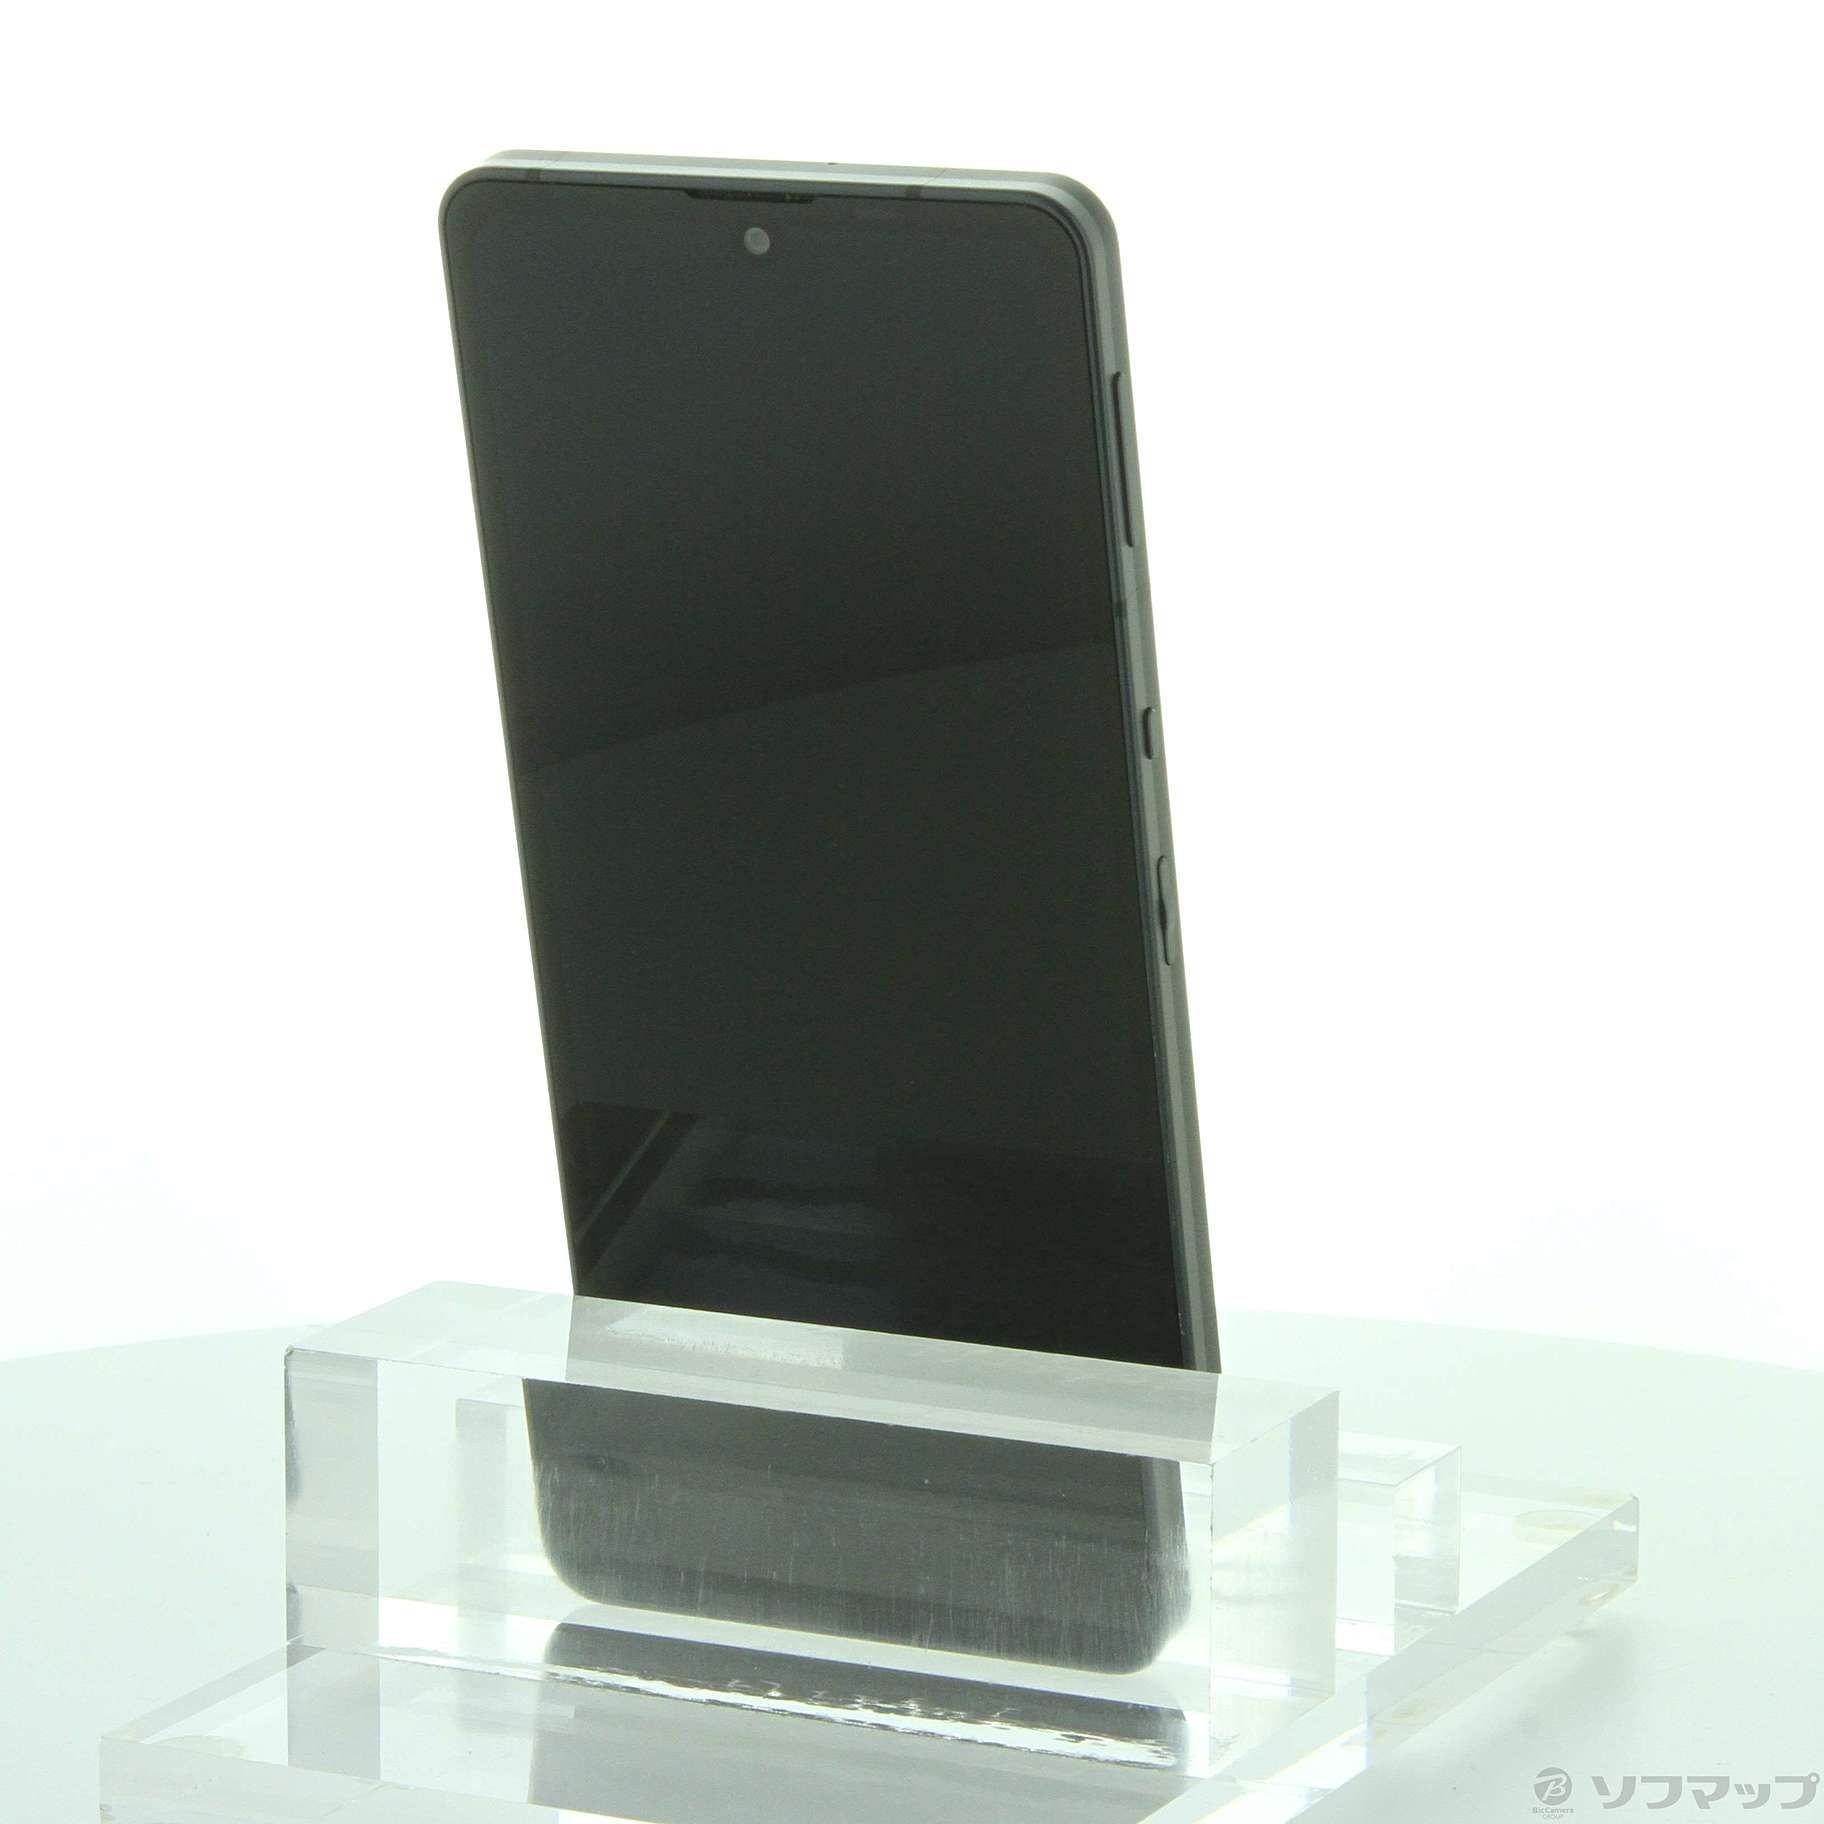 中古】AQUOS sense6s 楽天版 64GB ブラック SH-RM19s SIMフリー